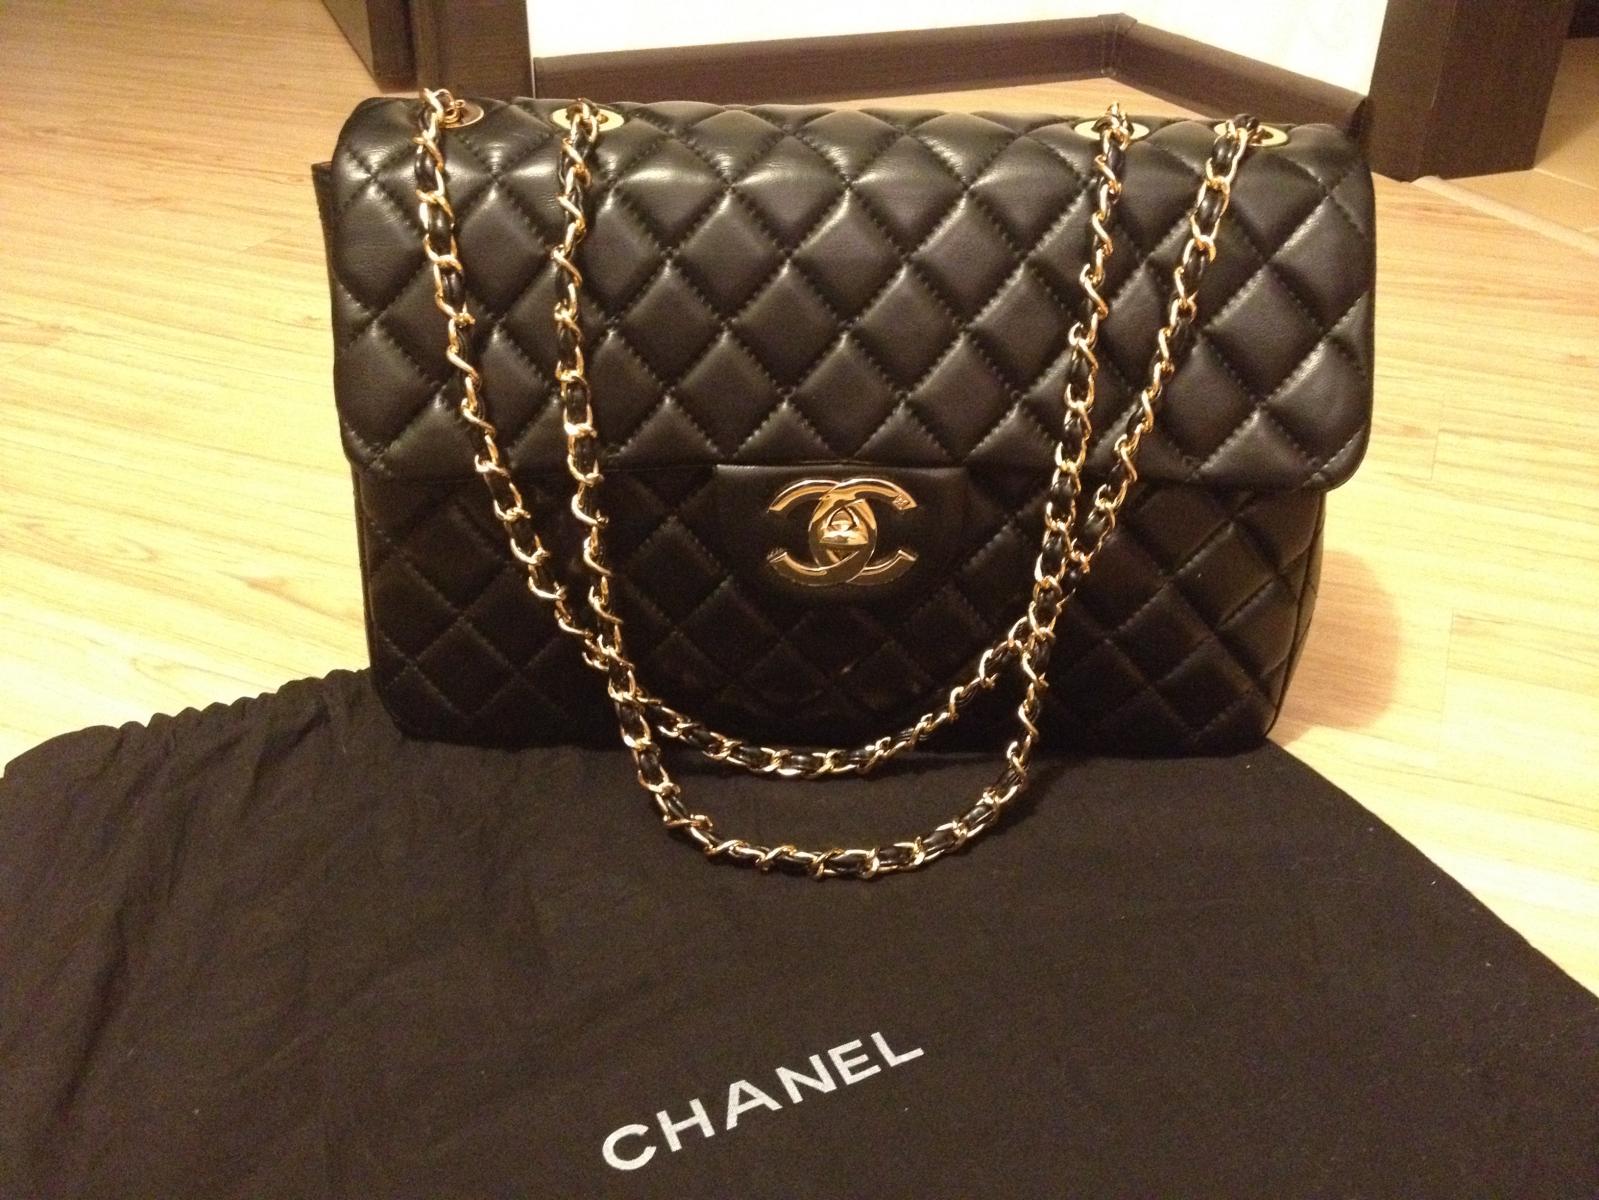 Продать сумку Chanel в Москве  скупка сумок Шанель дорого